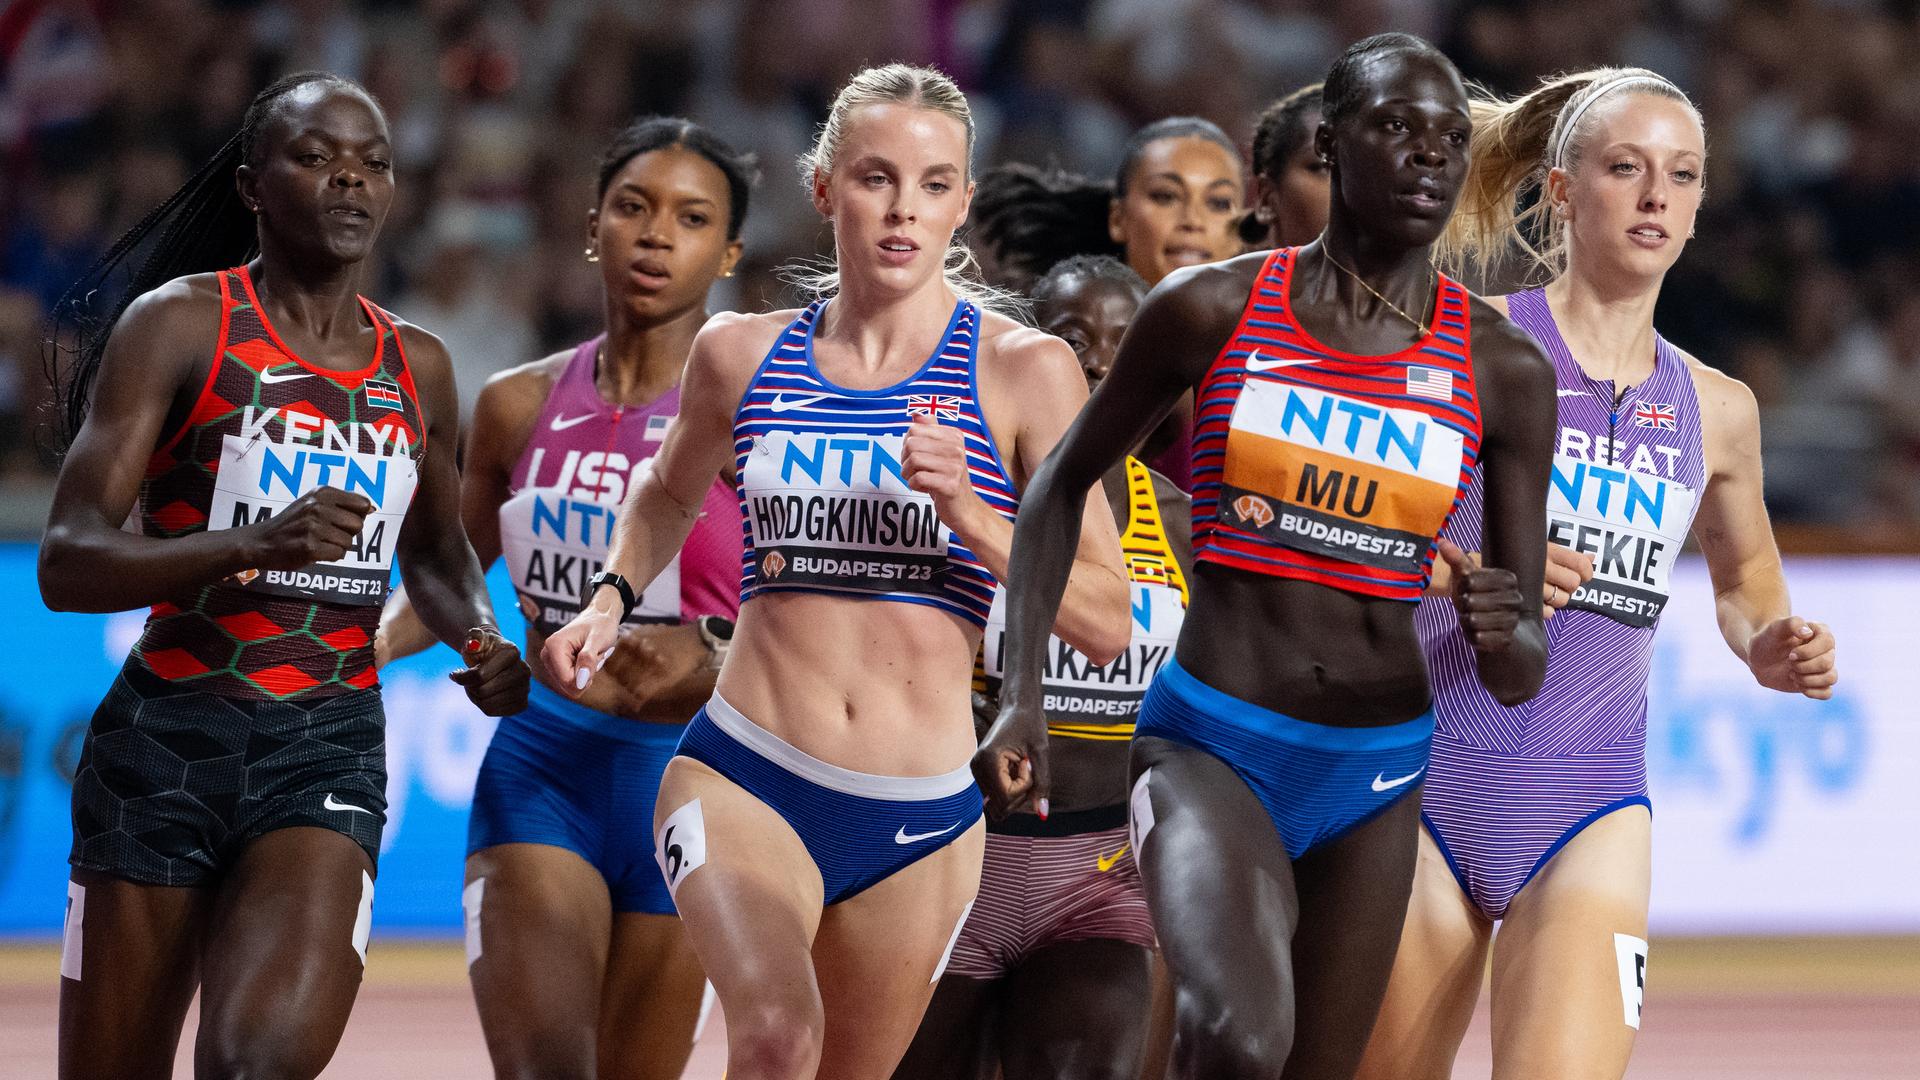 Frauen beim 800-Meter-Lauf bei der Leichtathletik Weltmeisterschaft in Budapest.